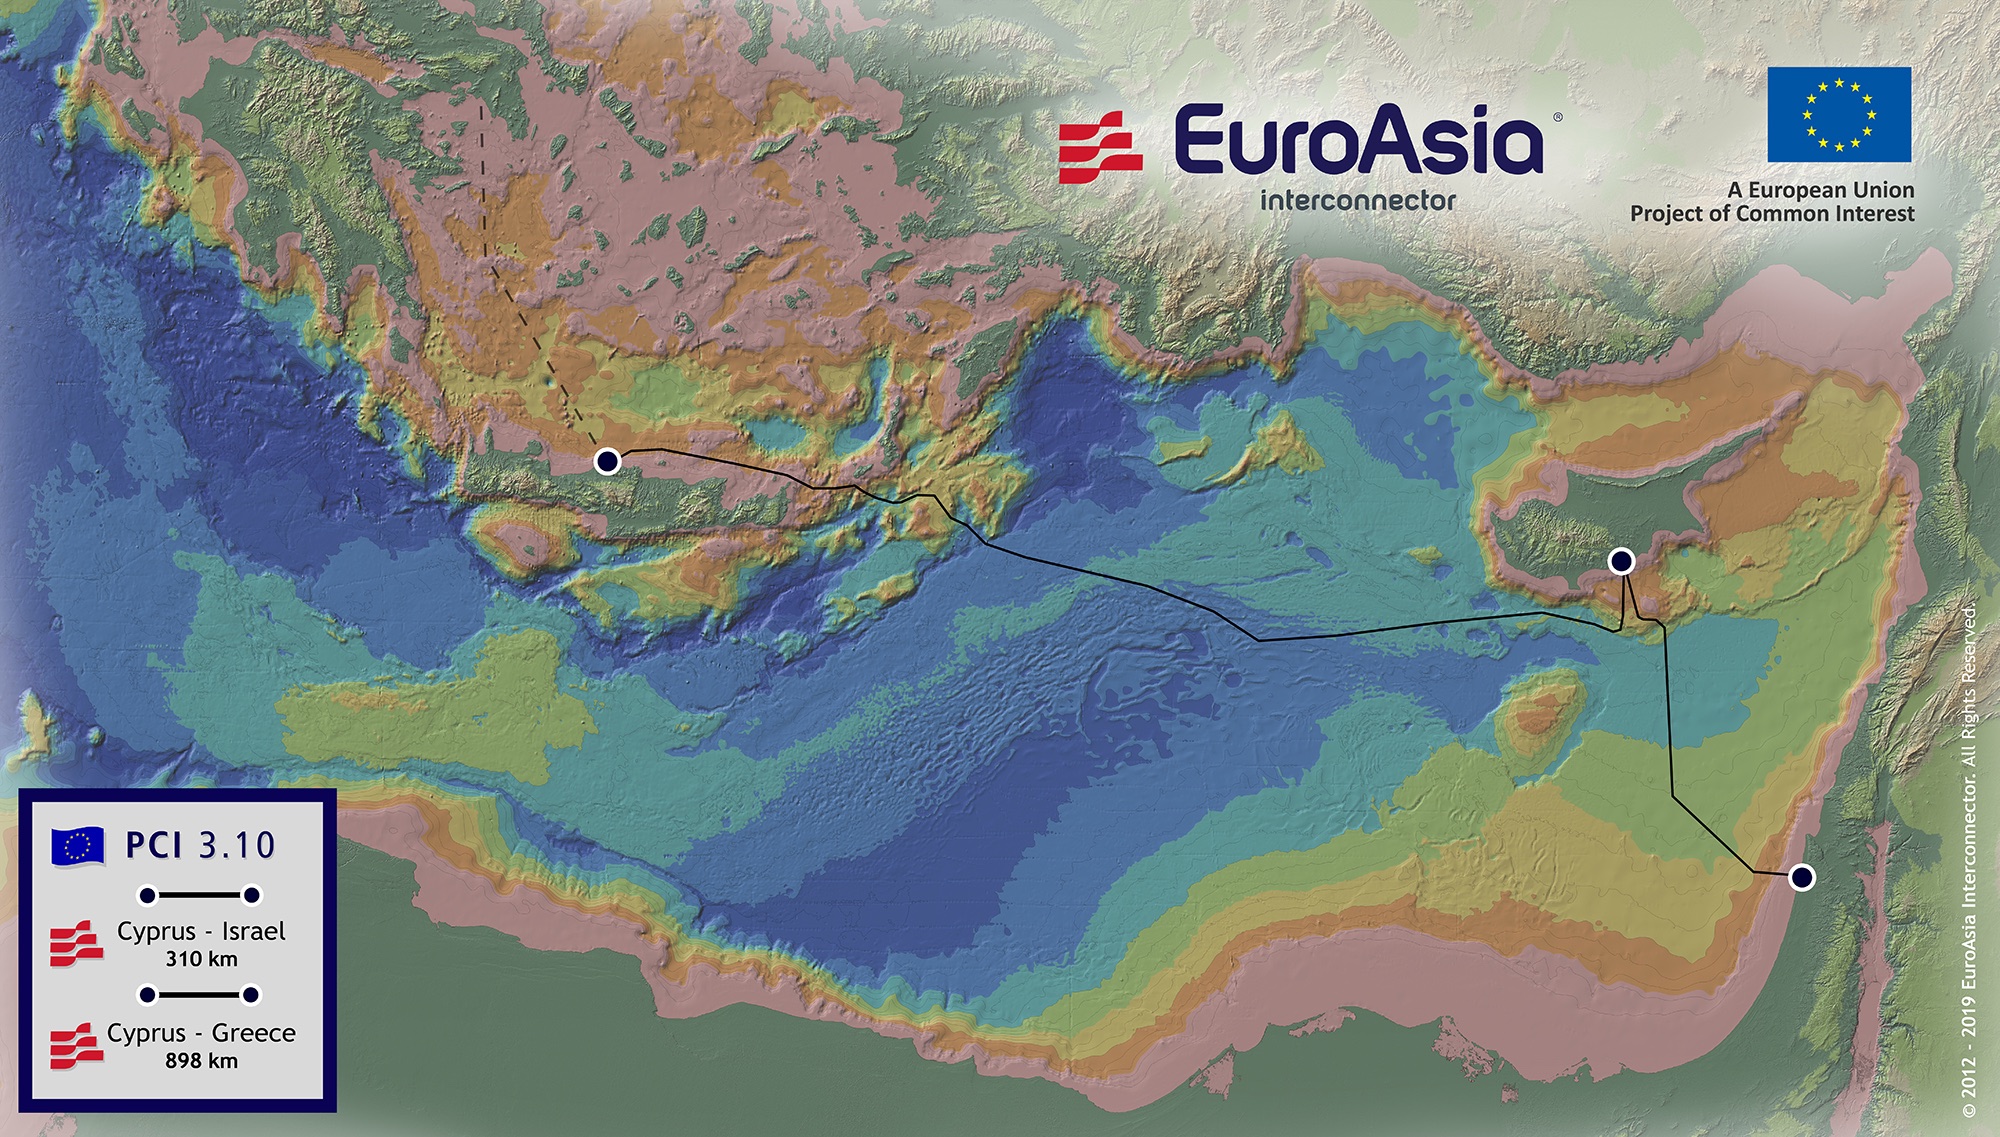 EuroAsia_Map copy.jpg